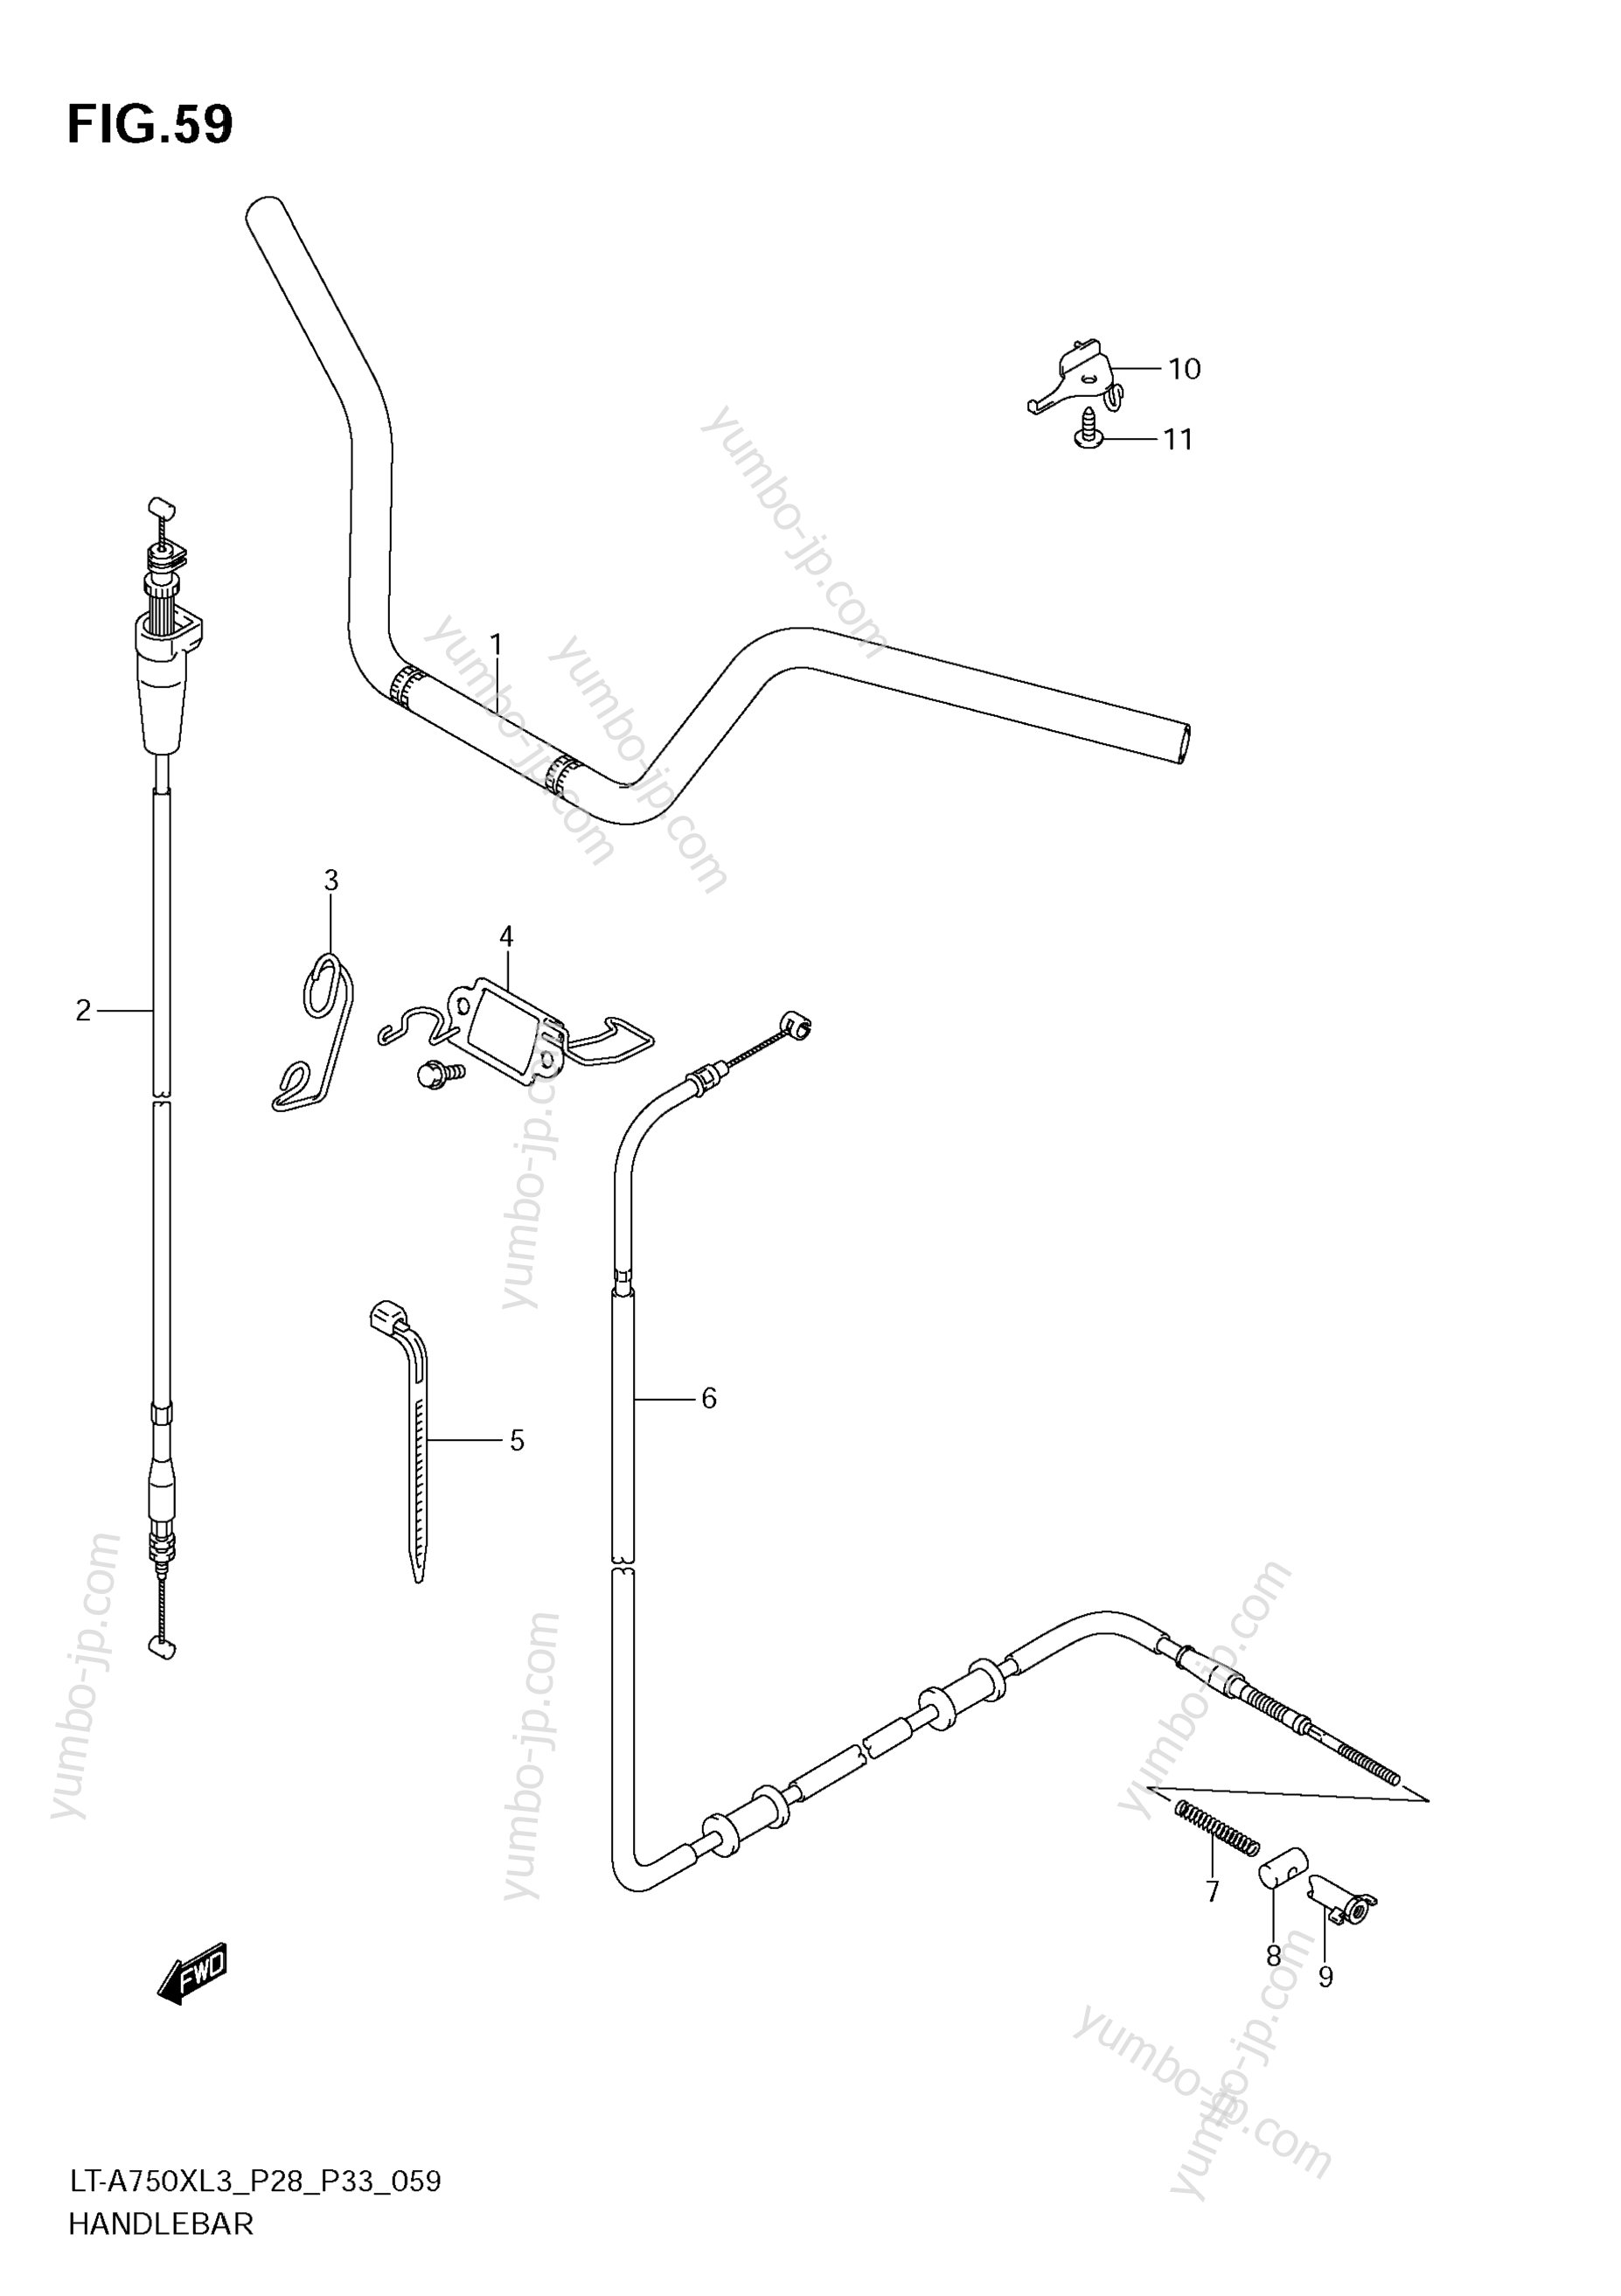 Румпель (рукоятка управления) для квадроциклов SUZUKI KingQuad (LT-A750XZ) 2013 г.